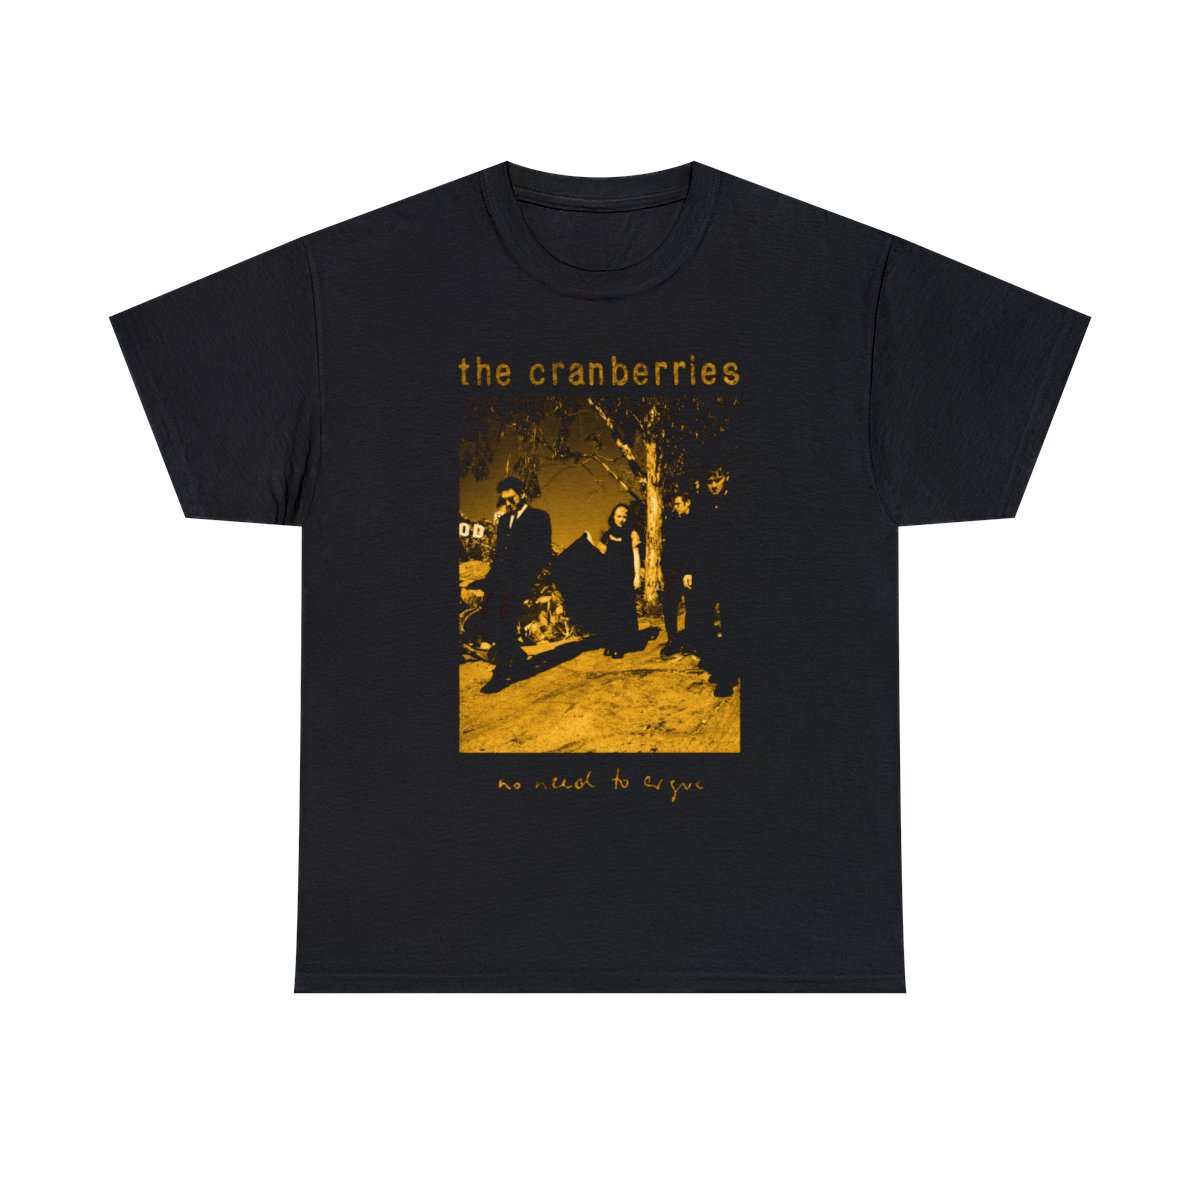 The Cranberries Vintage T-Shirt Black Unisex Heavy Cotton Tee